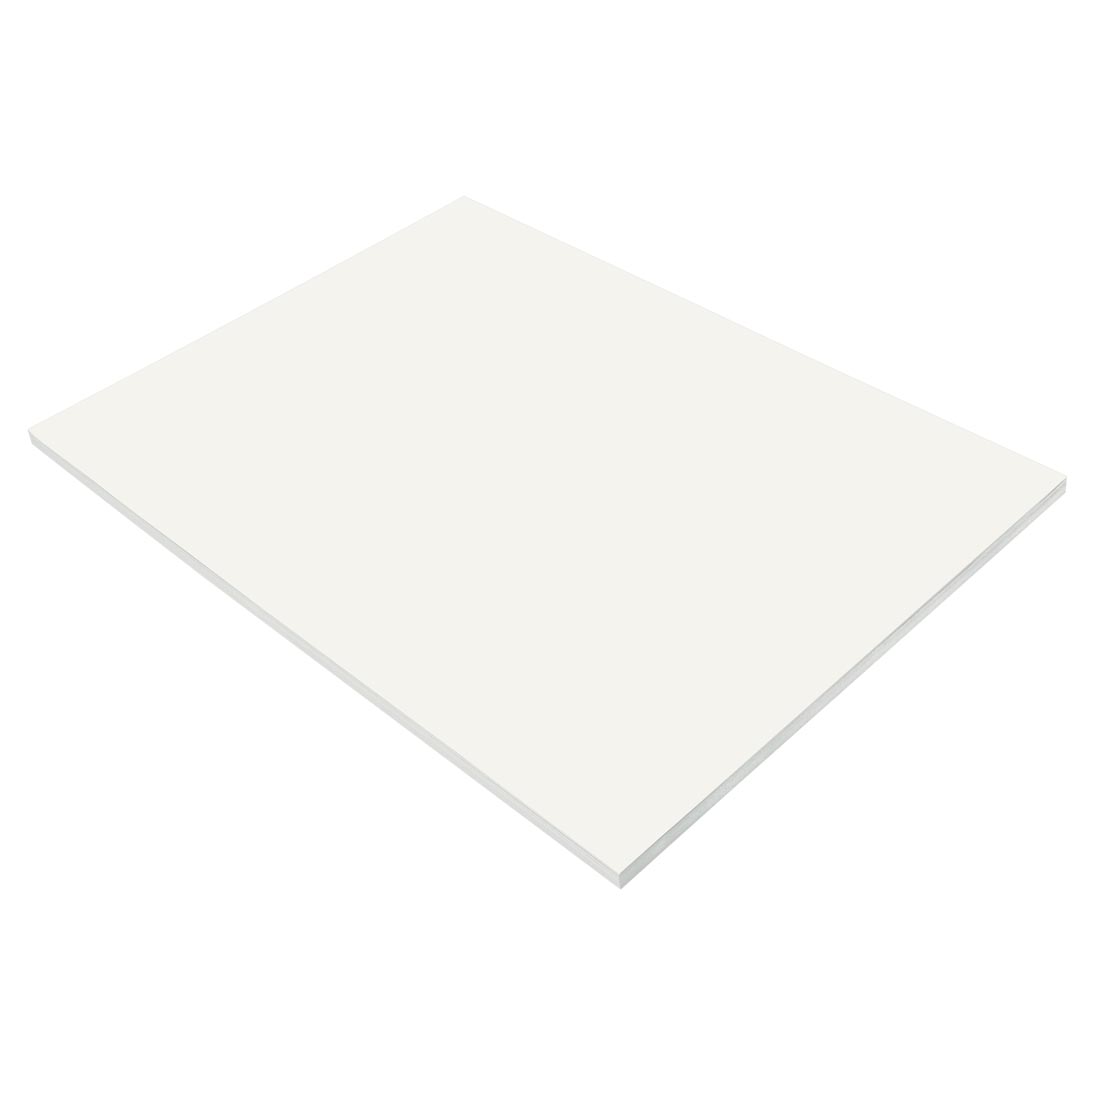 White Prang/Sunworks Construction Paper